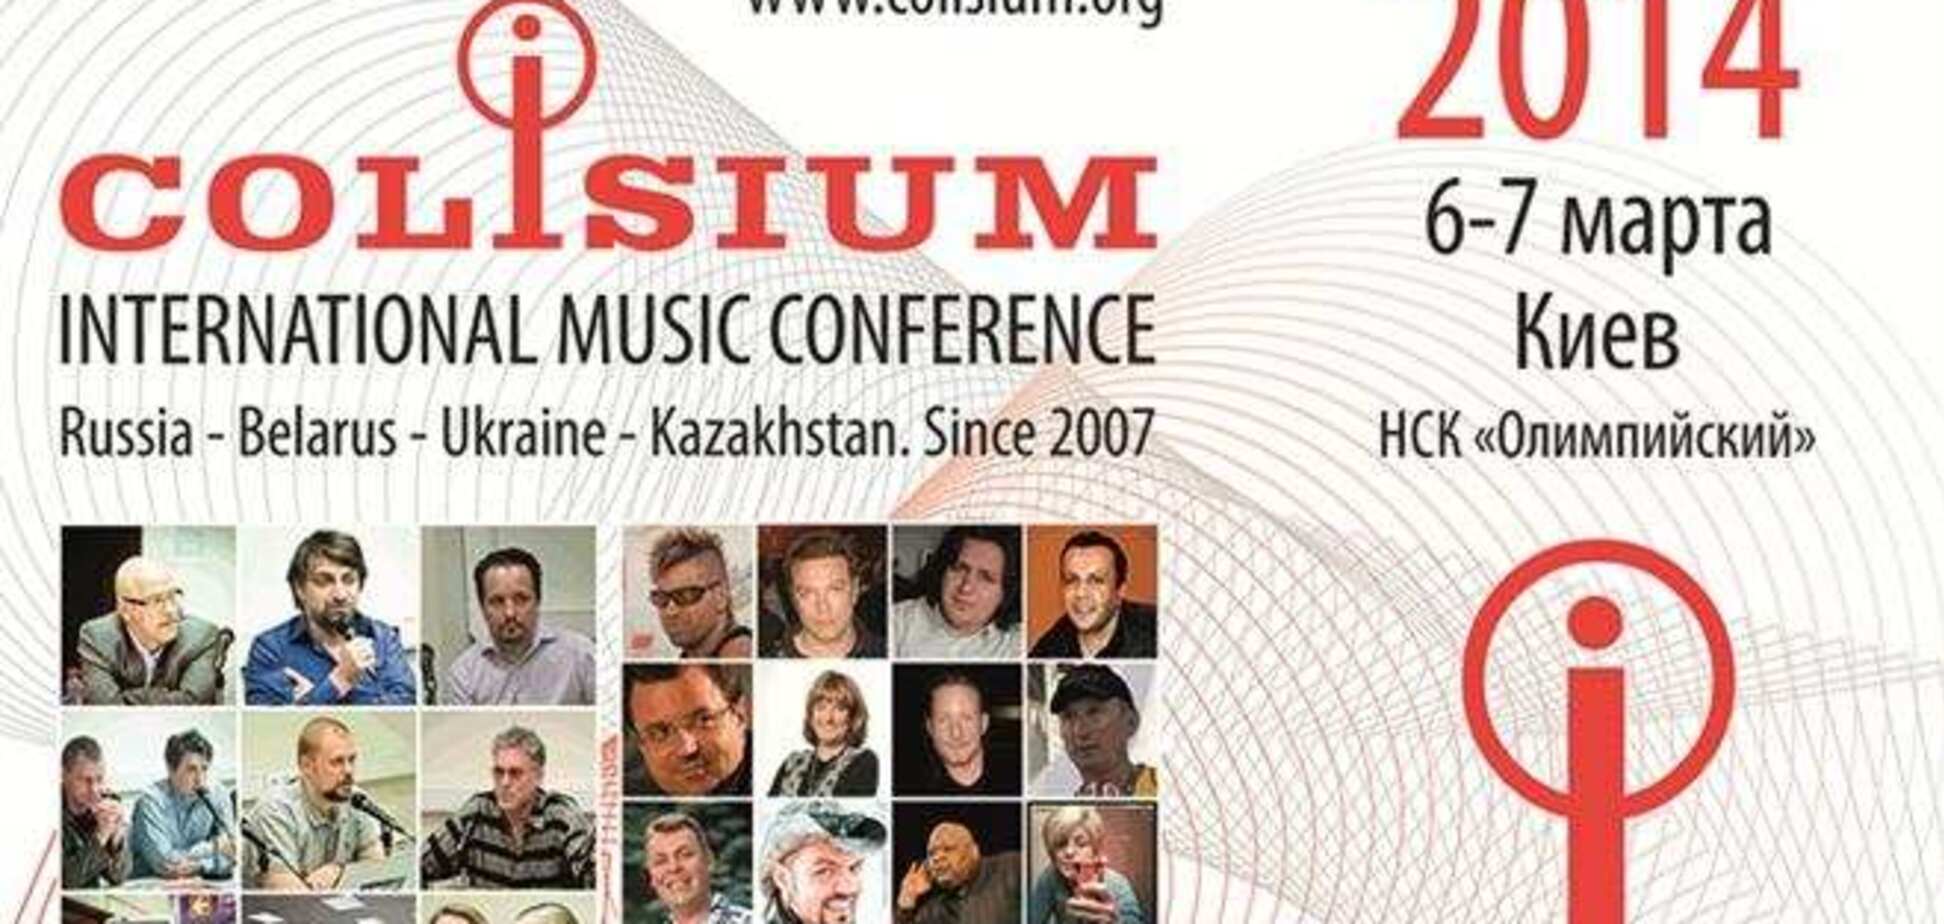 Вперше в Україні проводиться міжнародна музична конференція Colisium